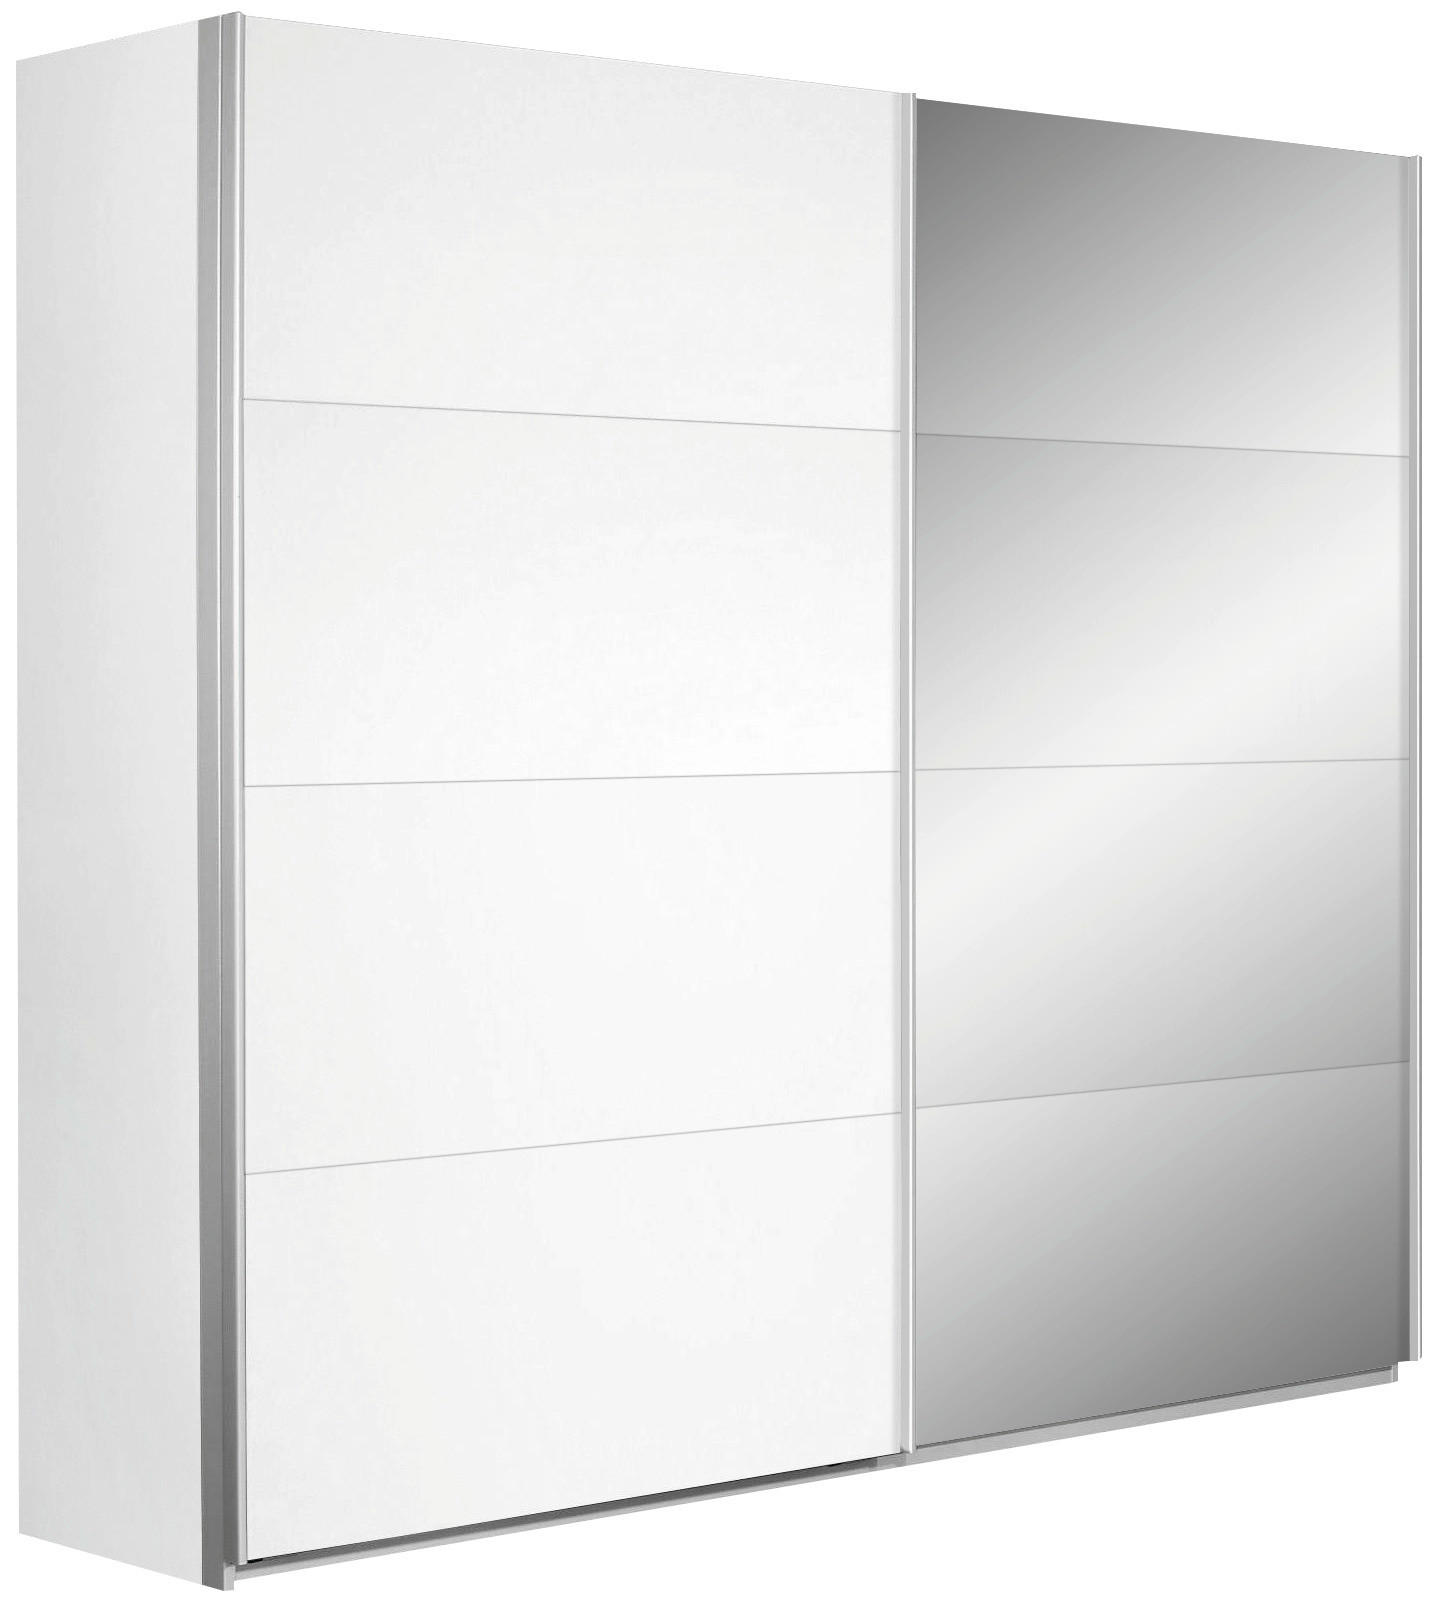 SCHWEBETÜRENSCHRANK 2-türig Weiß  - Silberfarben/Weiß, Design, Glas/Holzwerkstoff (226/210/62cm) - Carryhome